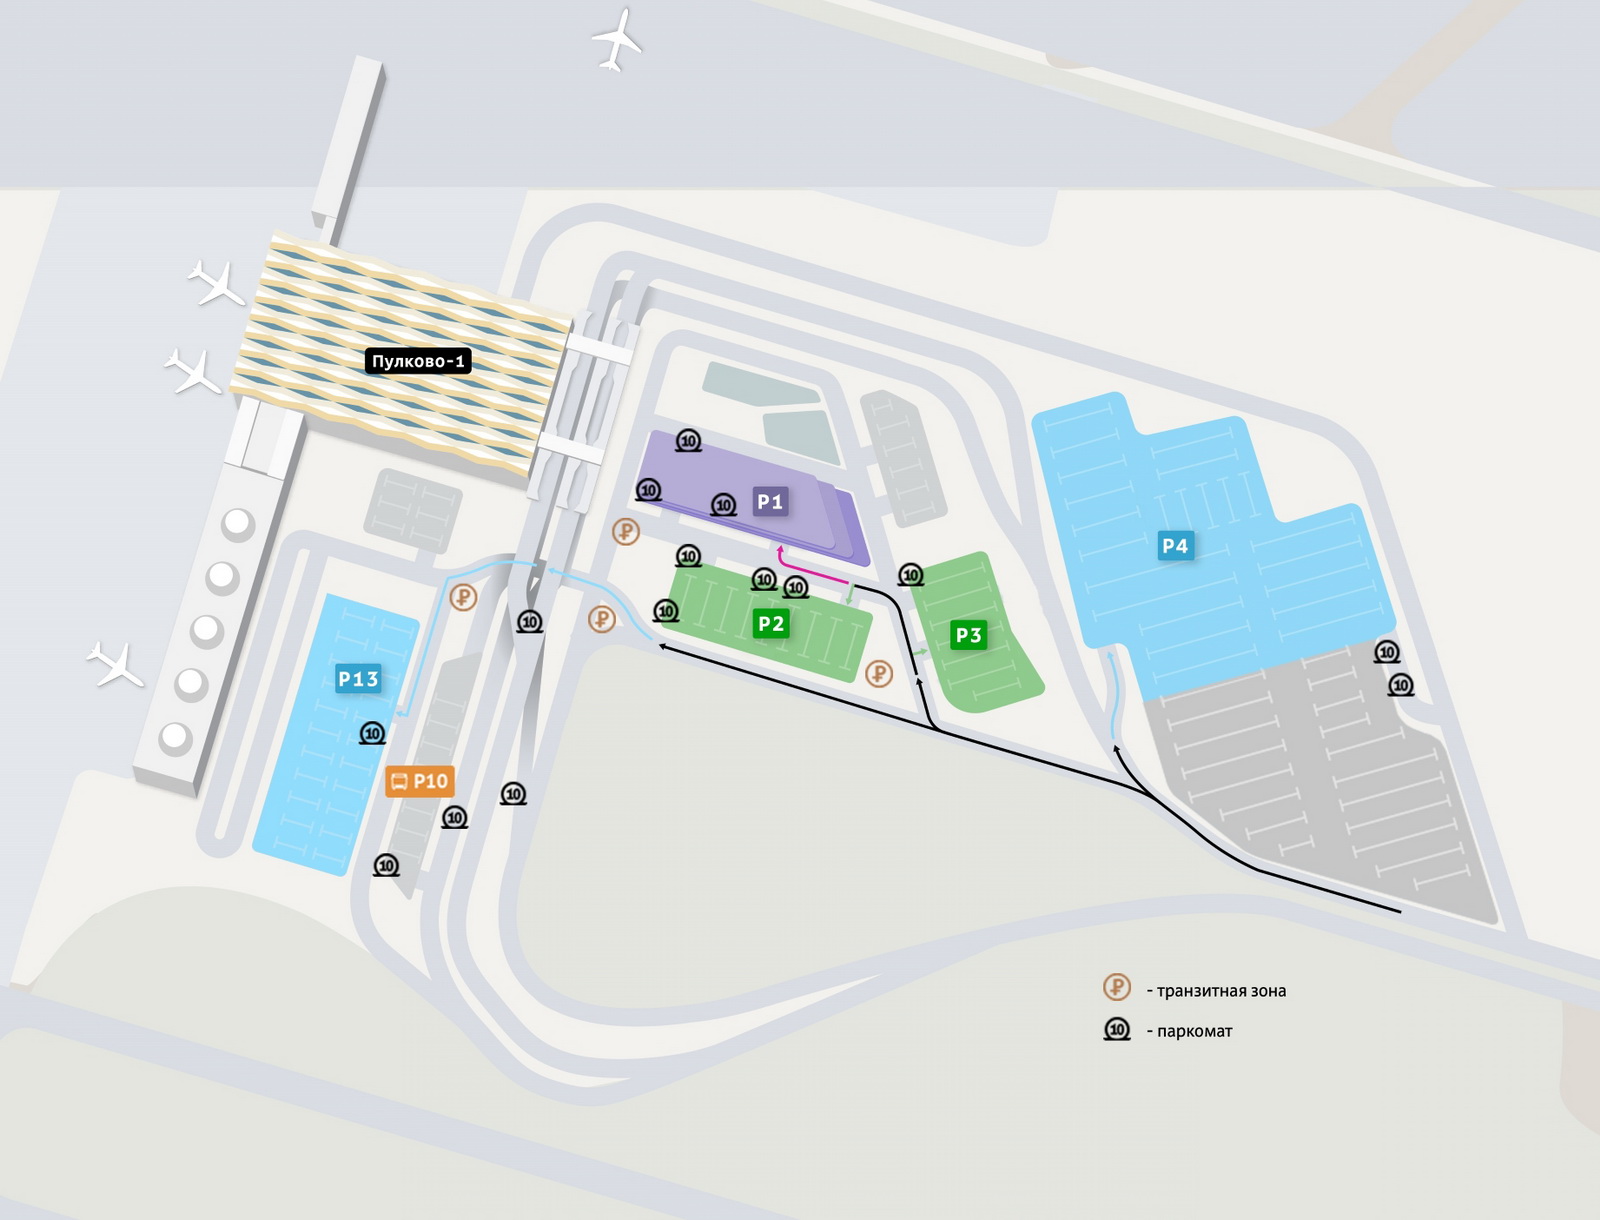 Пулково открыл новую долгосрочную парковку рядом с терминалом